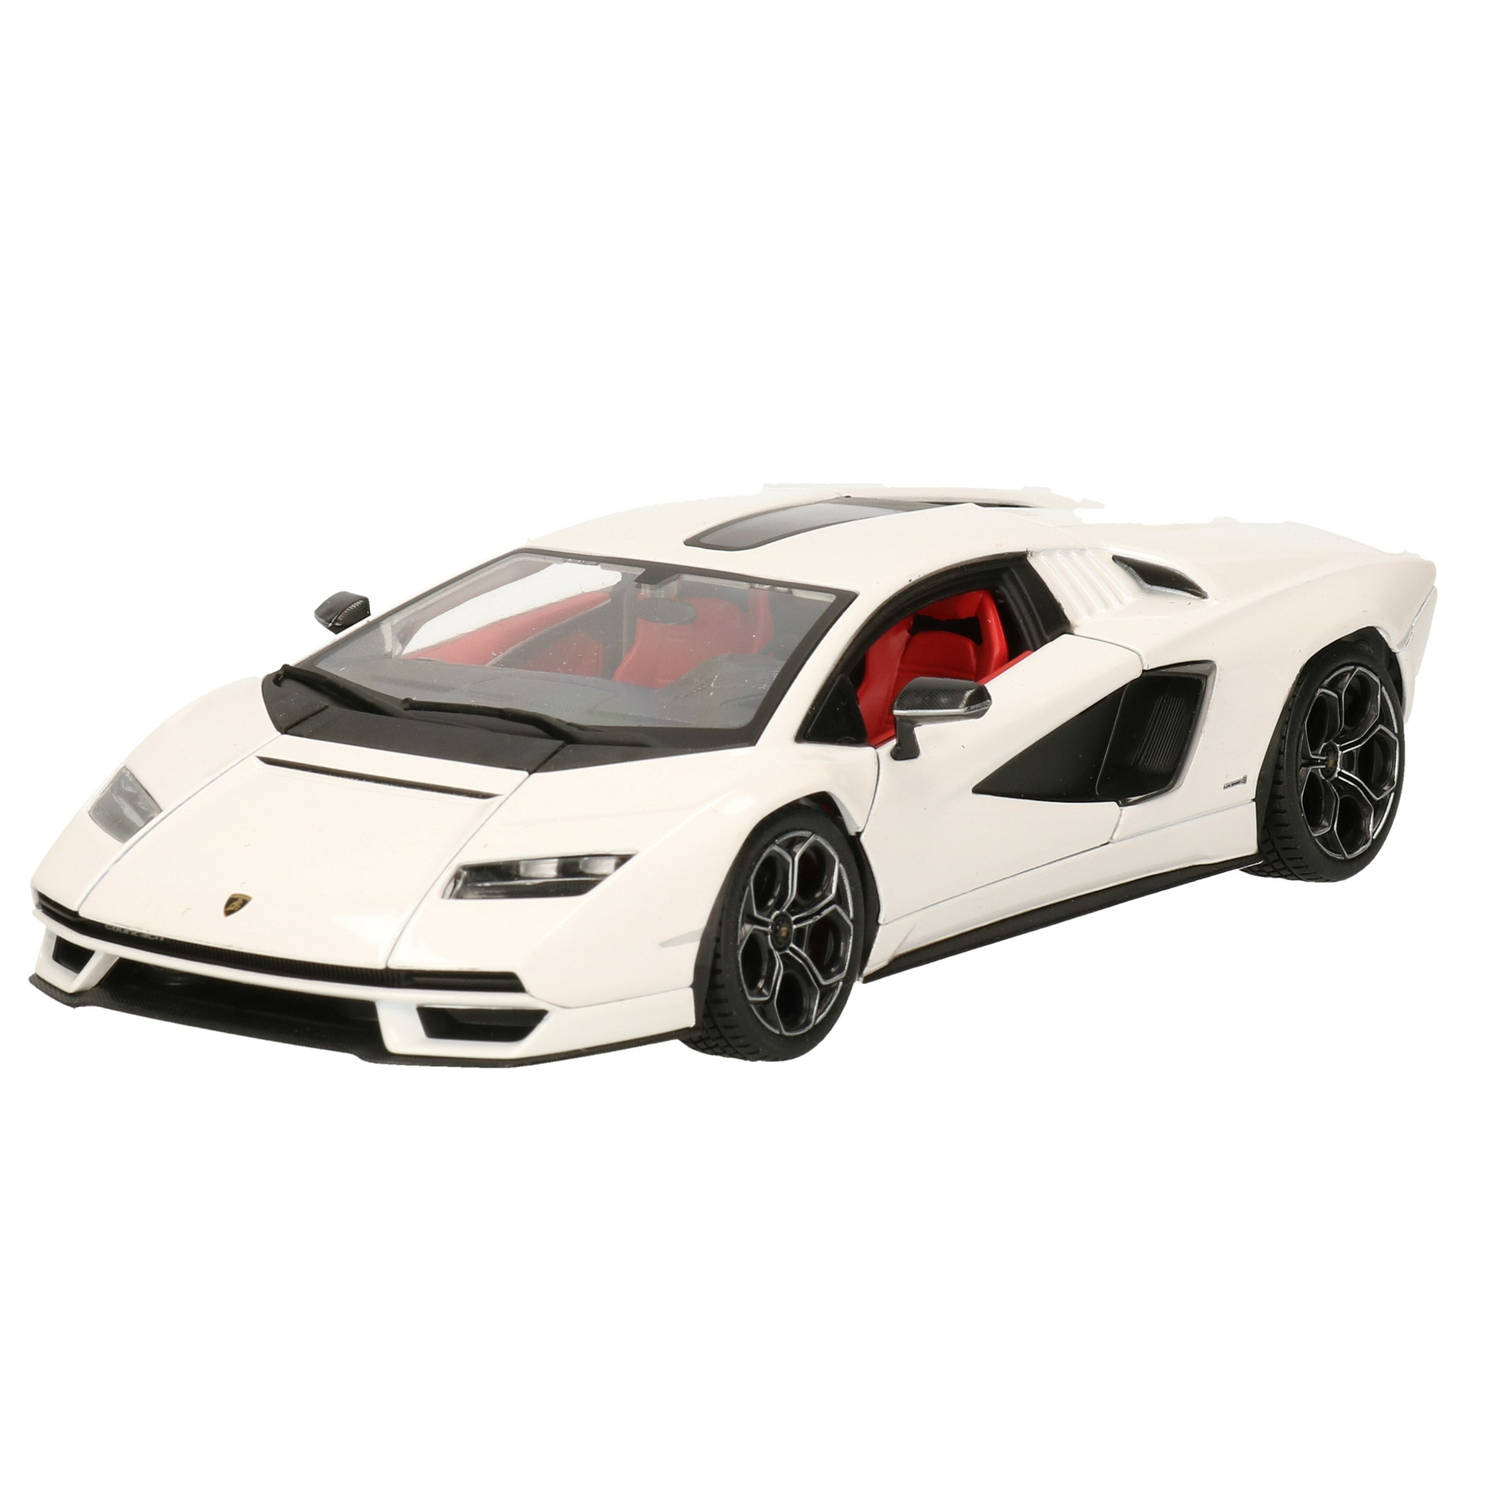 Experiment Magazijn Onverbiddelijk Modelauto/speelgoedauto Lamborghini Countach schaal 1:24/20 x 8 x 5 cm -  Speelgoed auto's | Blokker